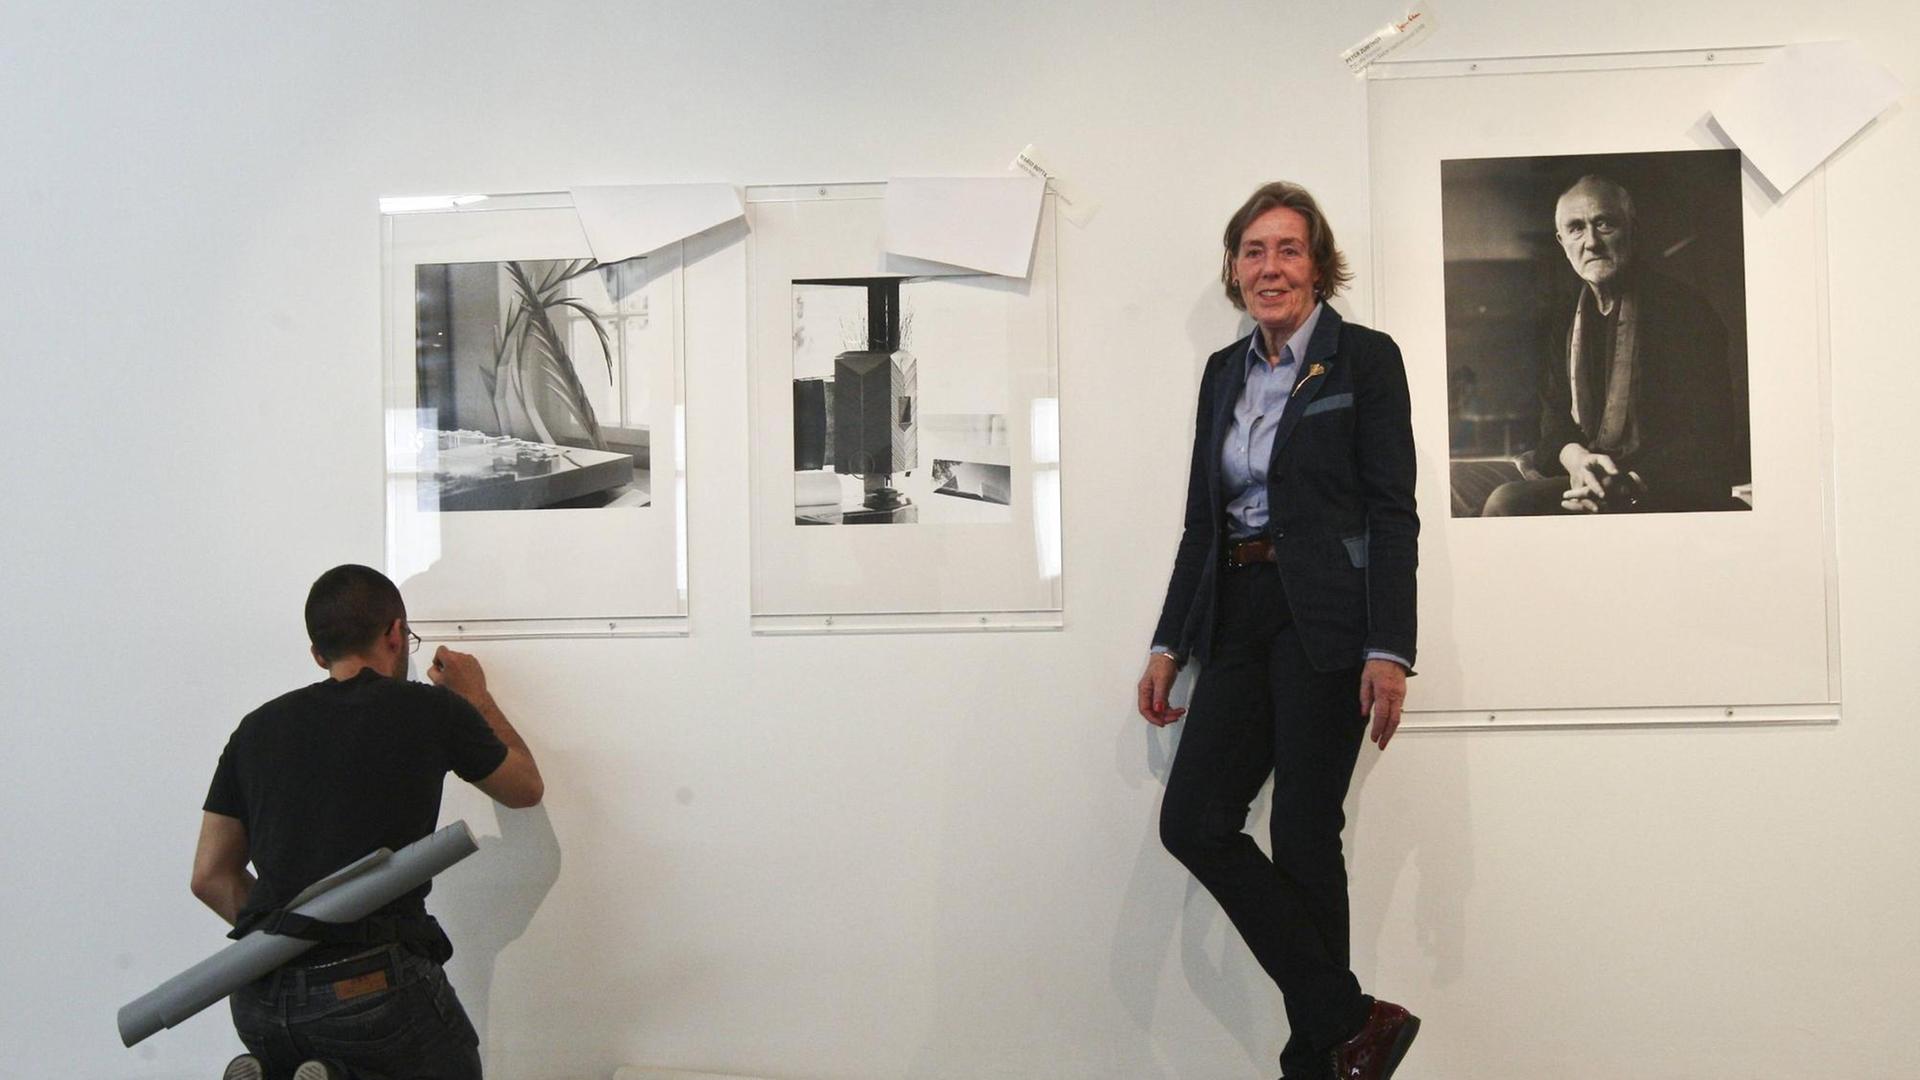 Ingrid von Kruse steht an eine Wand gelehnt. Ein Mann hockt auf dem Boden und besfstigt drei ihrer Fotografien an der Wand. Aufgenommen im April 2015 während der Vorbereitungen einer Ausstellung in Lissabon.